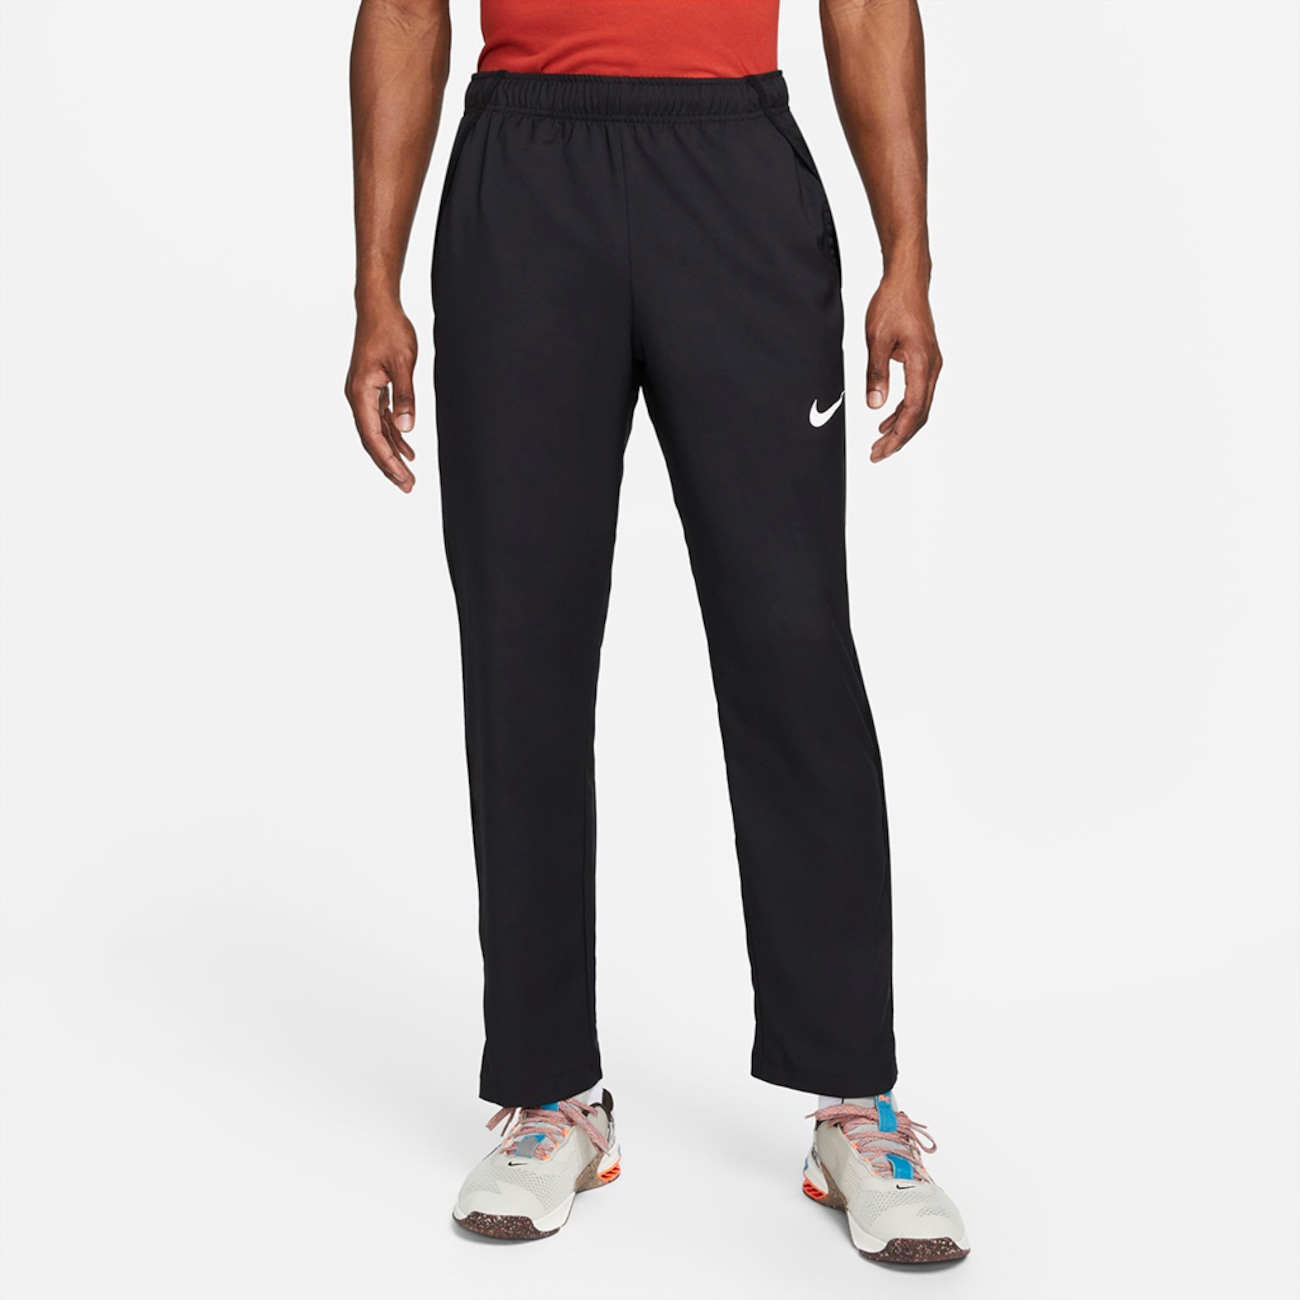 Vævede Nike Dri-FIT-holdtræningsbukser til mænd - sort